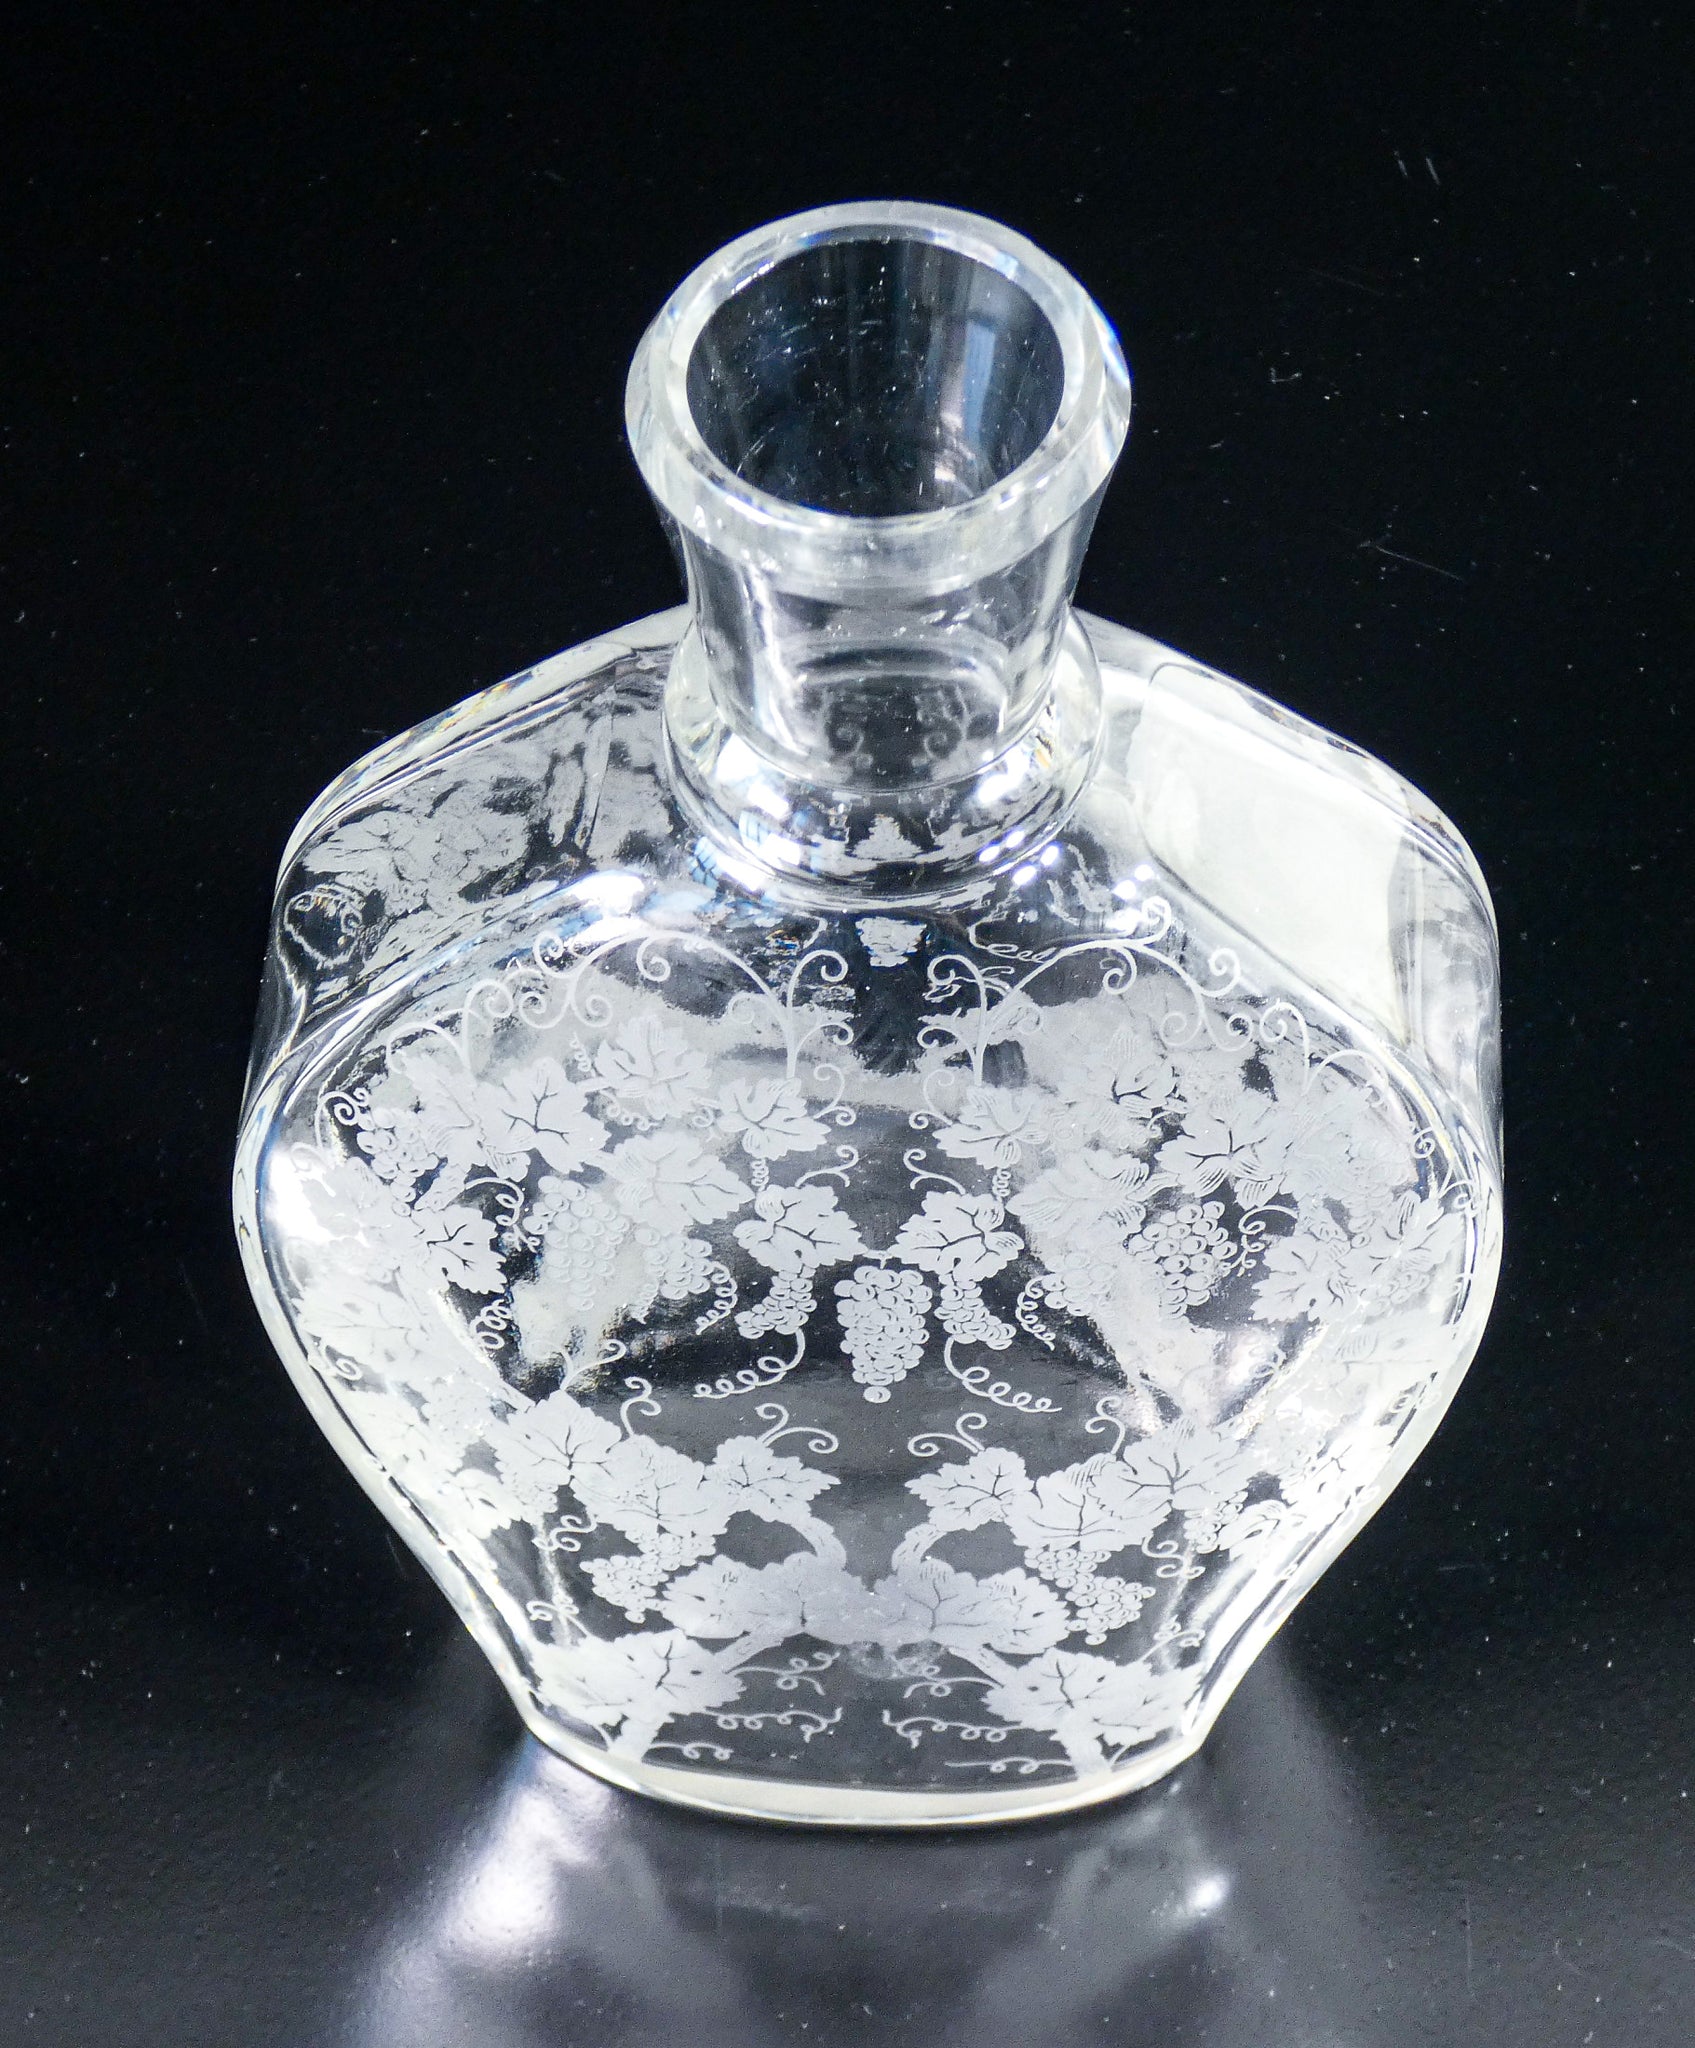 bottiglia baccarat france motivo uva vite decanter vaso cristallo epoca 1940s